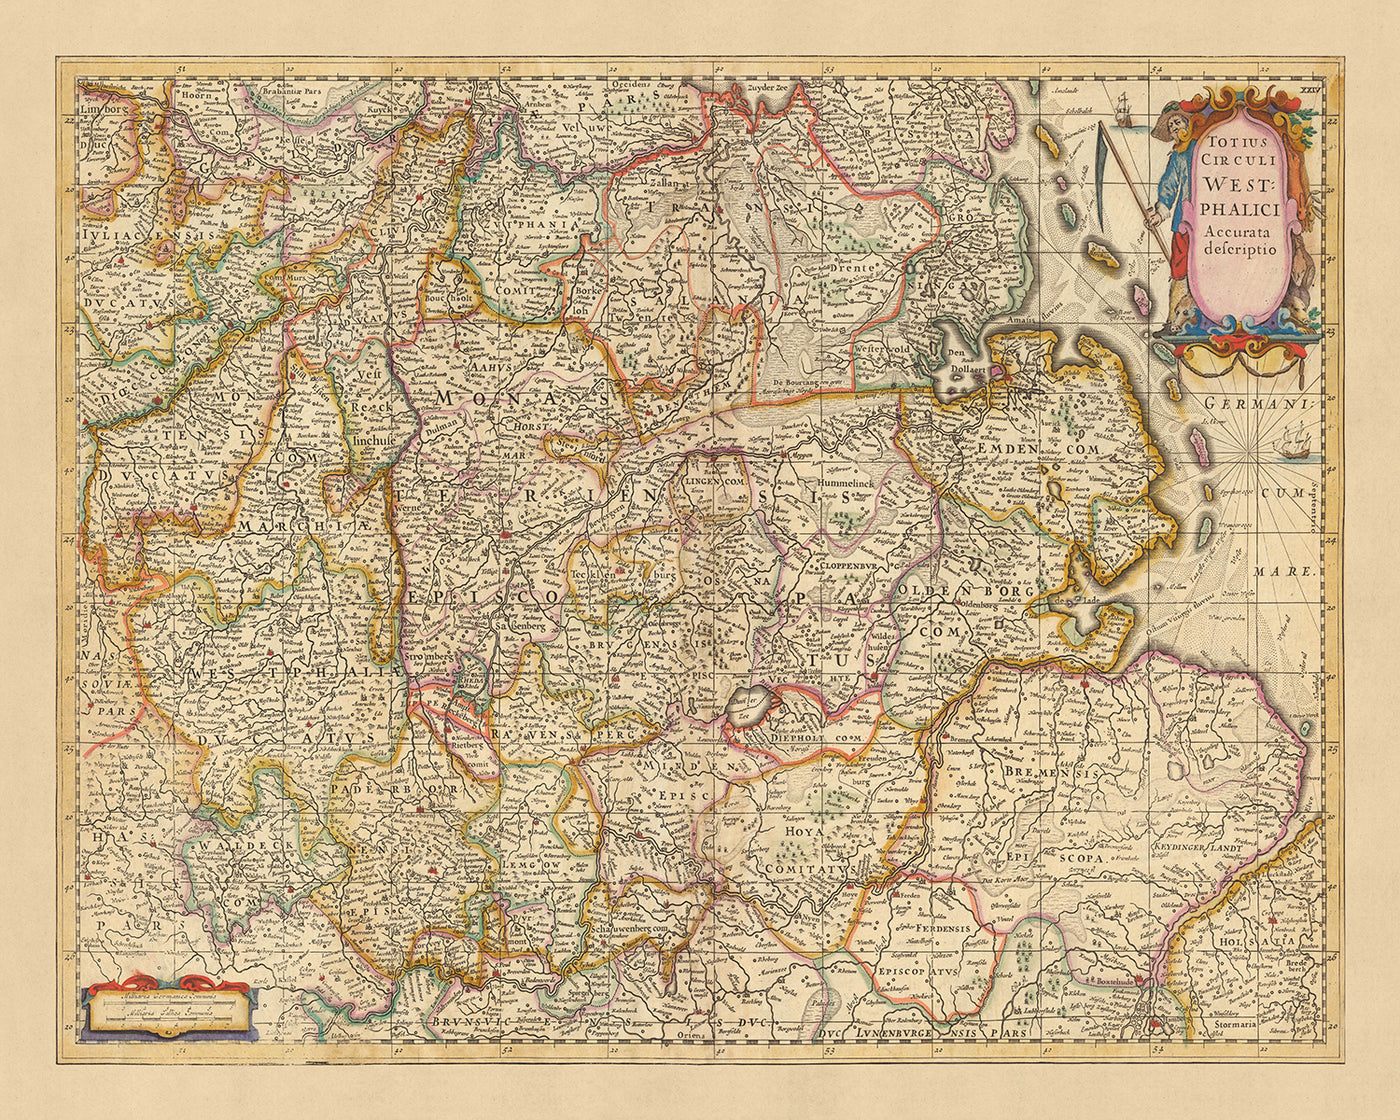 Alte Karte von Westfalen von Visscher, 1690: Hamburg, Bremen, Hannover, Köln, Dortmund